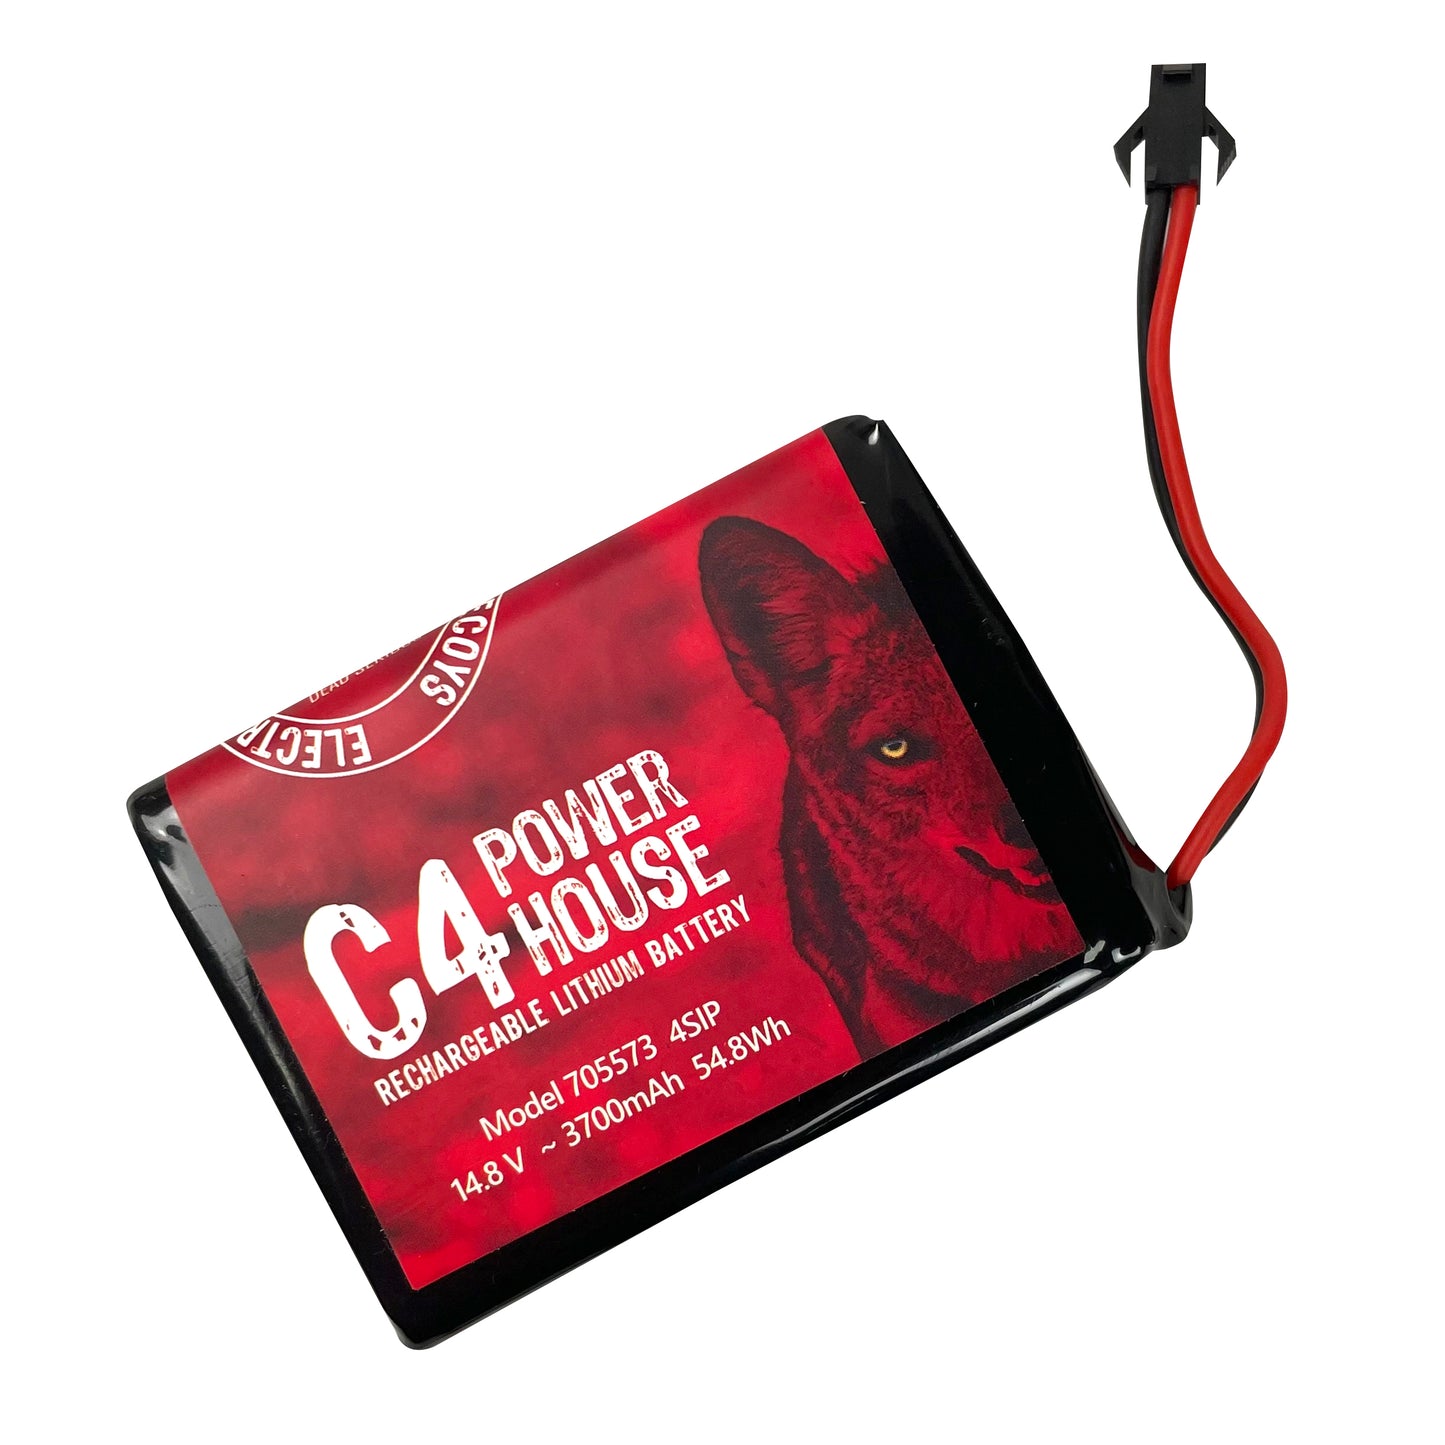 Batterie au lithium rechargeable C4 Power House UNIQUEMENT